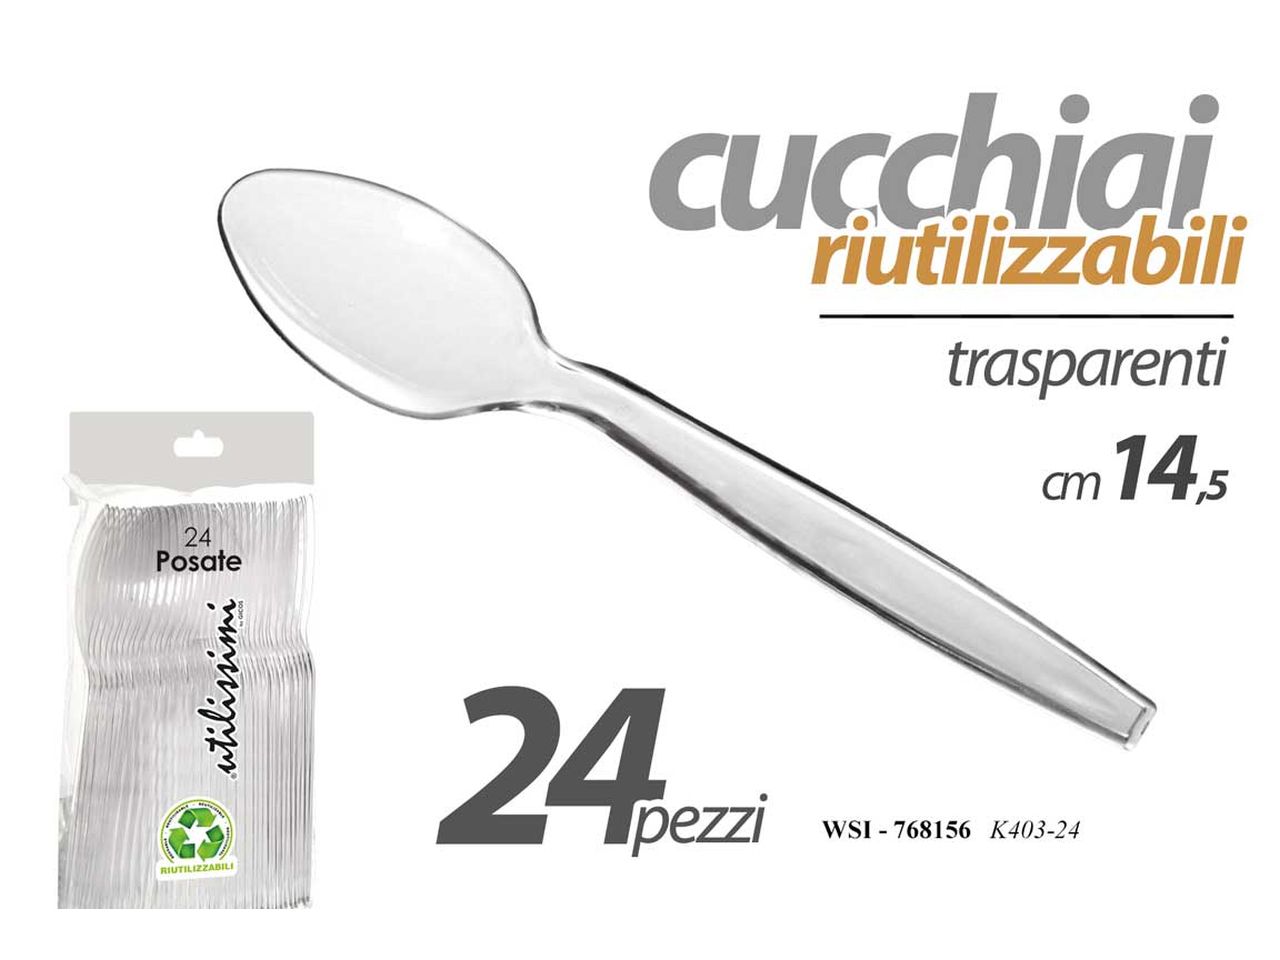 Cucchiai riutilizzabili 14,5cm in plastica trasparente - la confezione  contiene 24 cucchiai